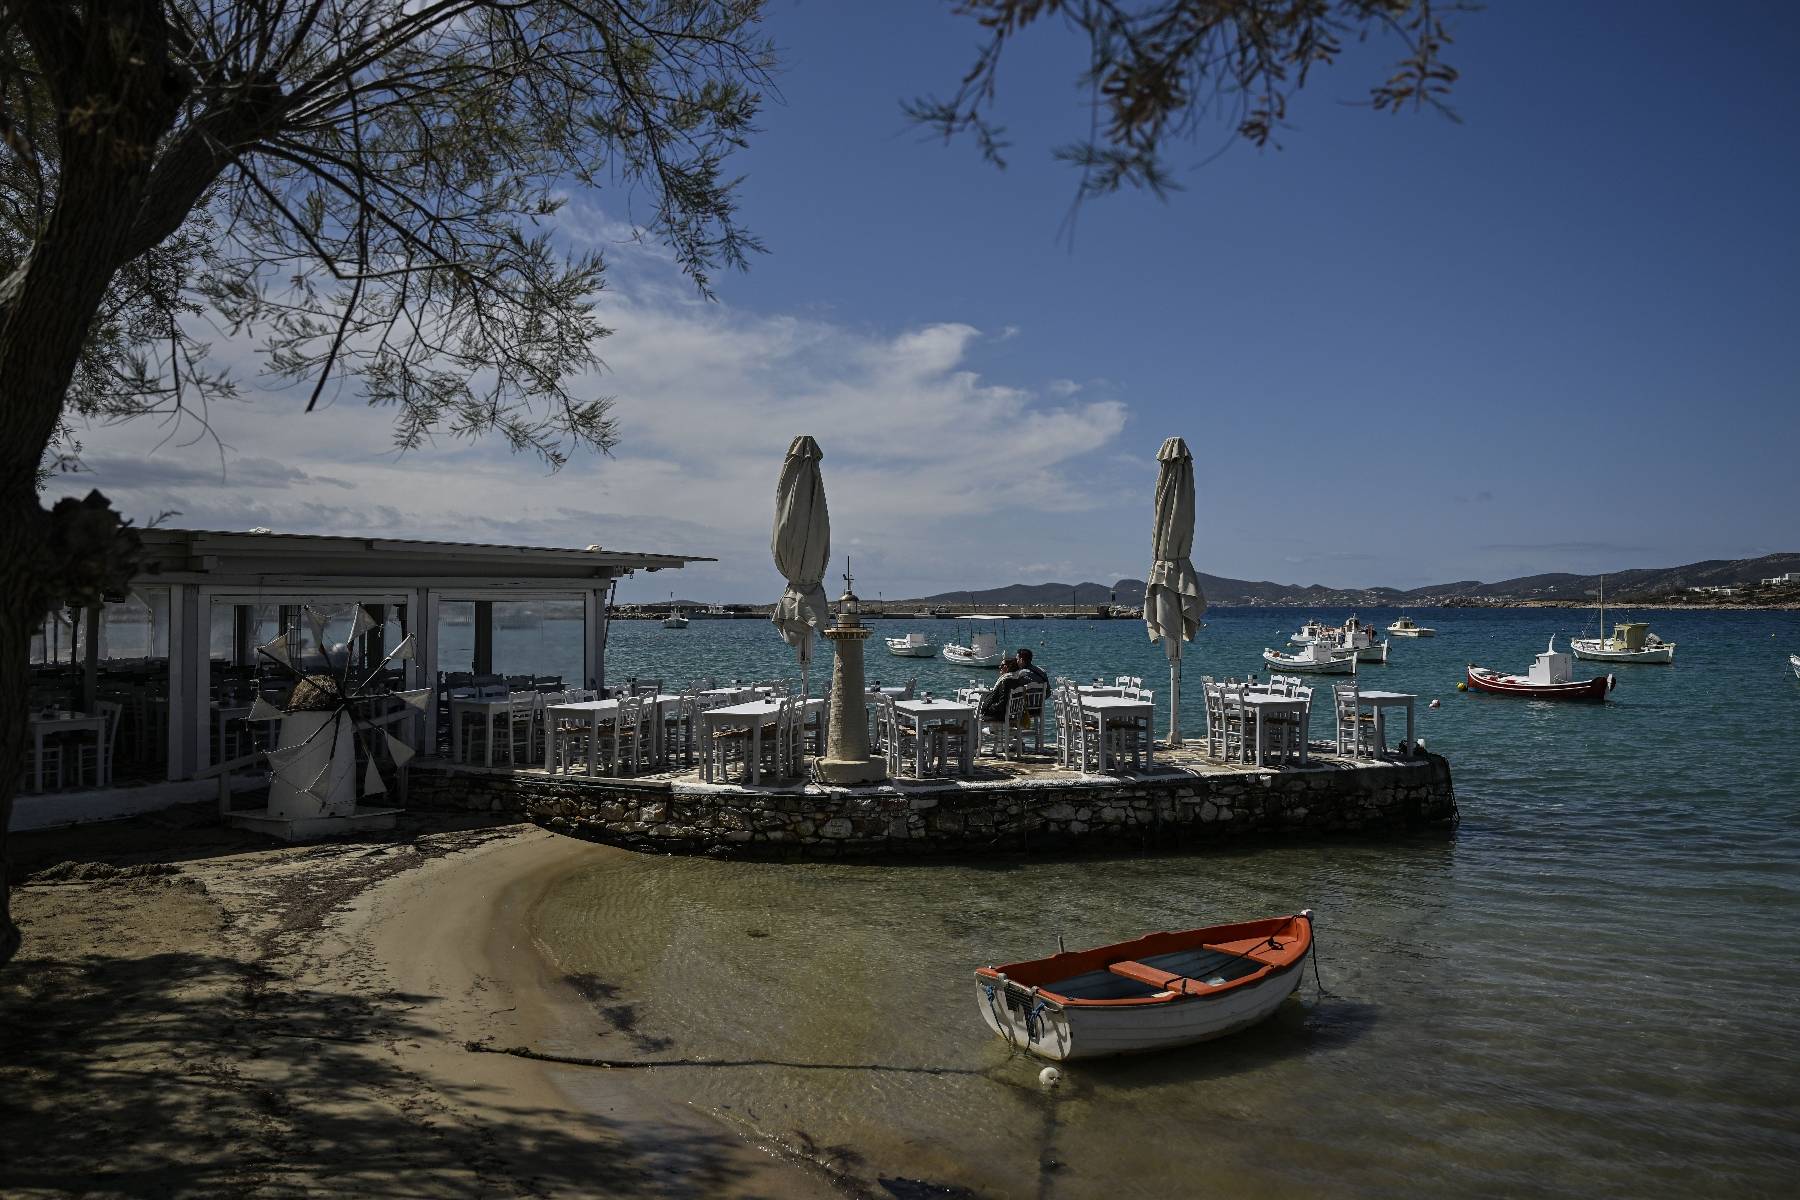 Grèce: l'île de Paros saisie de fièvre immobilière face au boom touristique